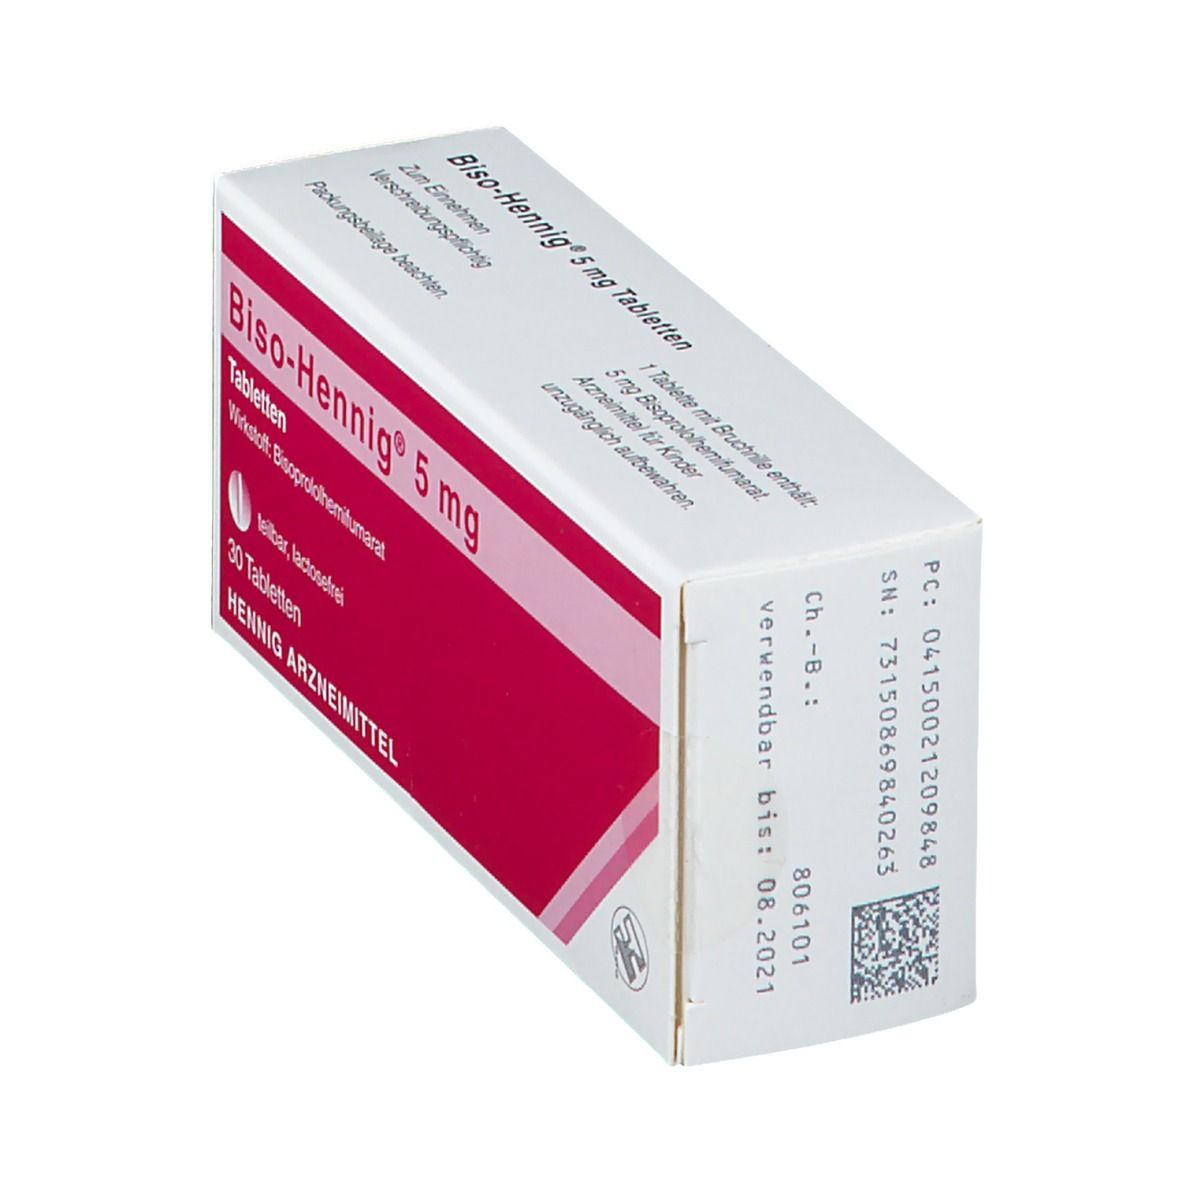 Biso-Hennig® 5 mg